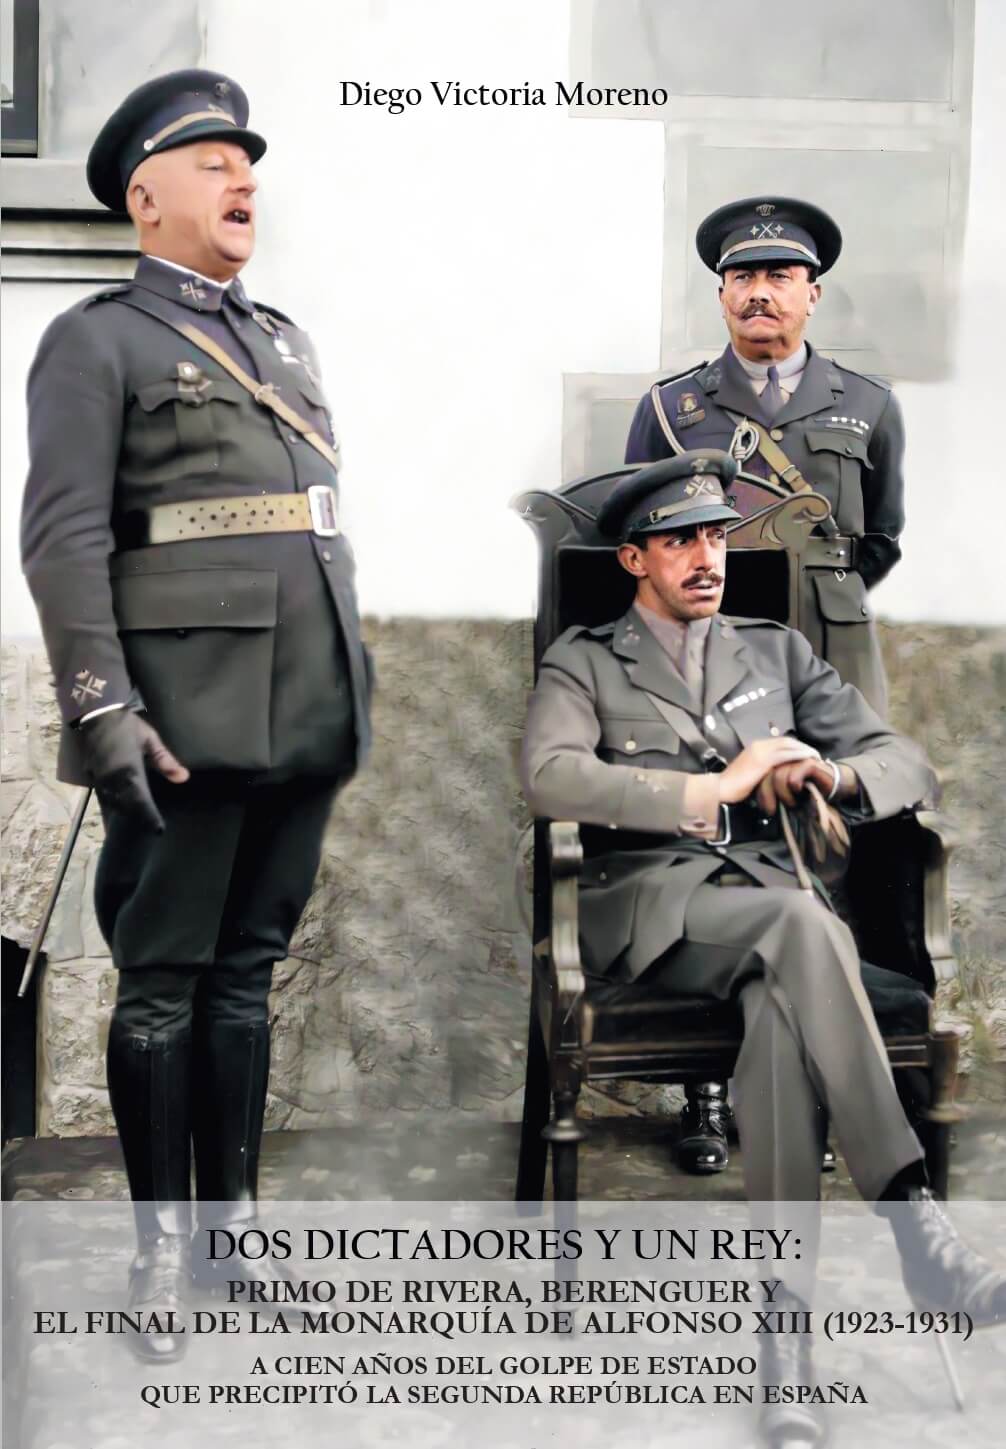 Dos dictadores y un rey: Primo de Rivera, Berenguer y el final de la monarquía de Alfonso XIII (1923-1931)